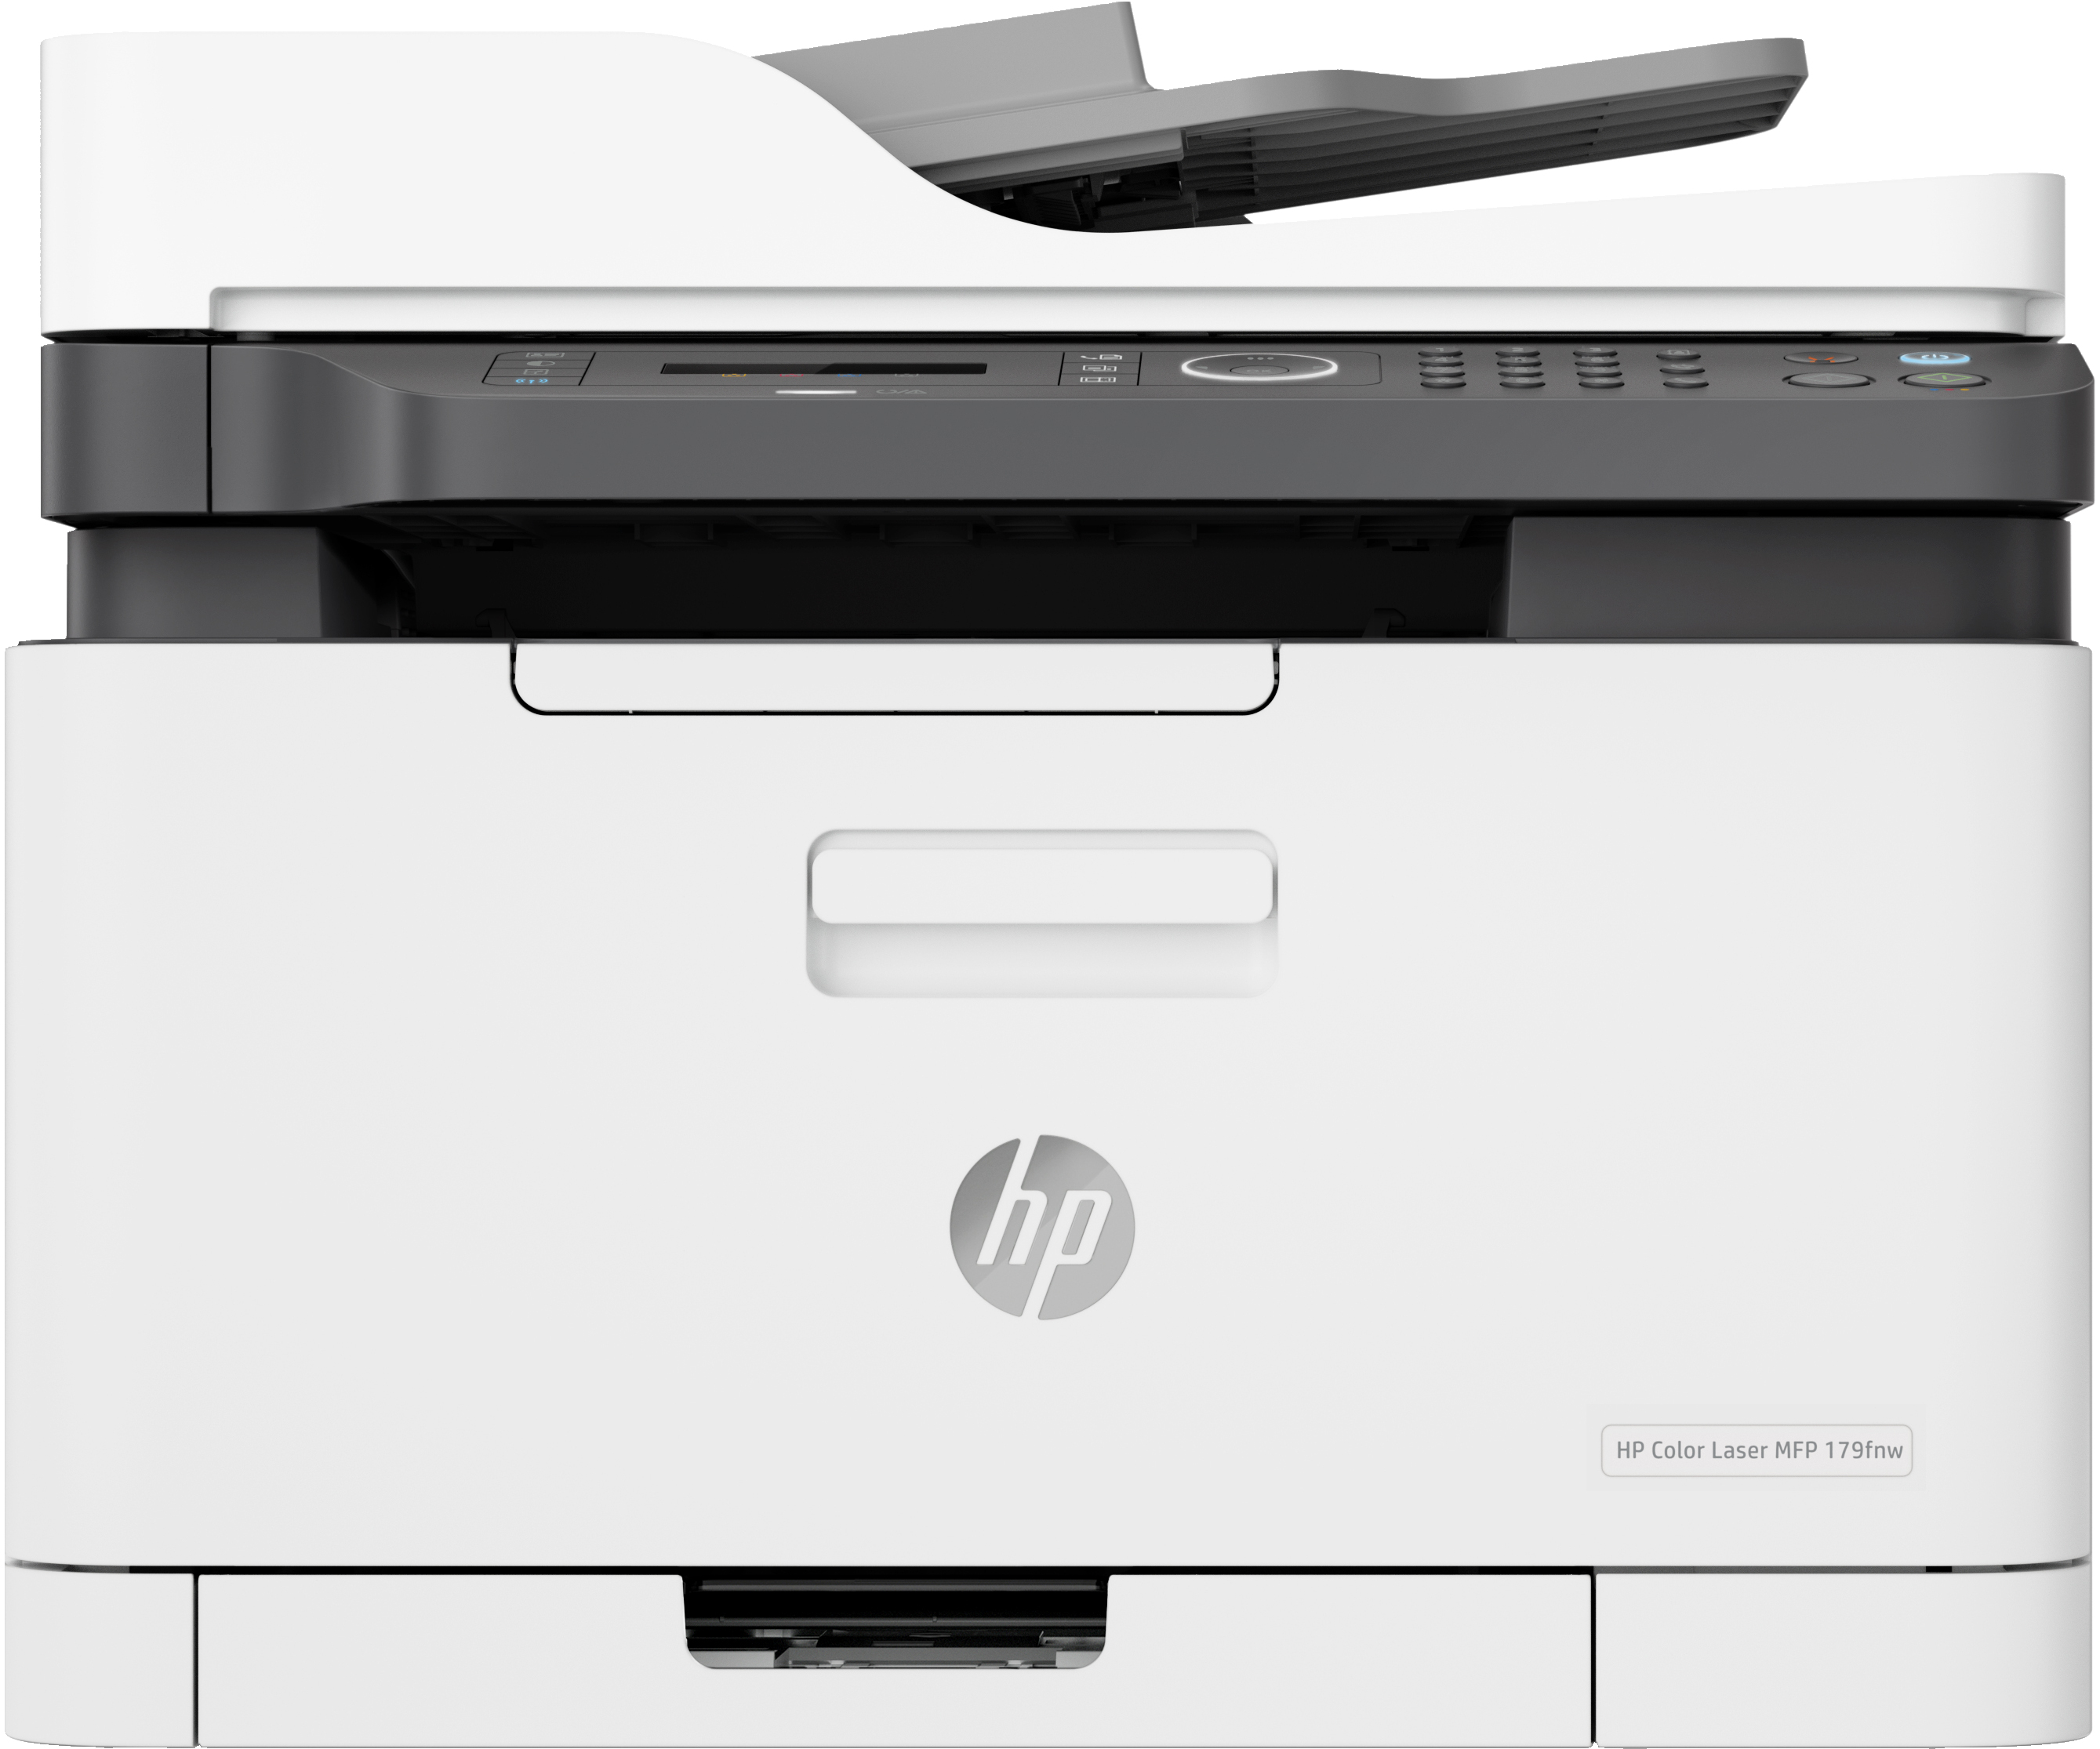 HP Color Laser MFP 179fnw, Skriv ut, kopiera, skanna, fax, Skanna till PDF